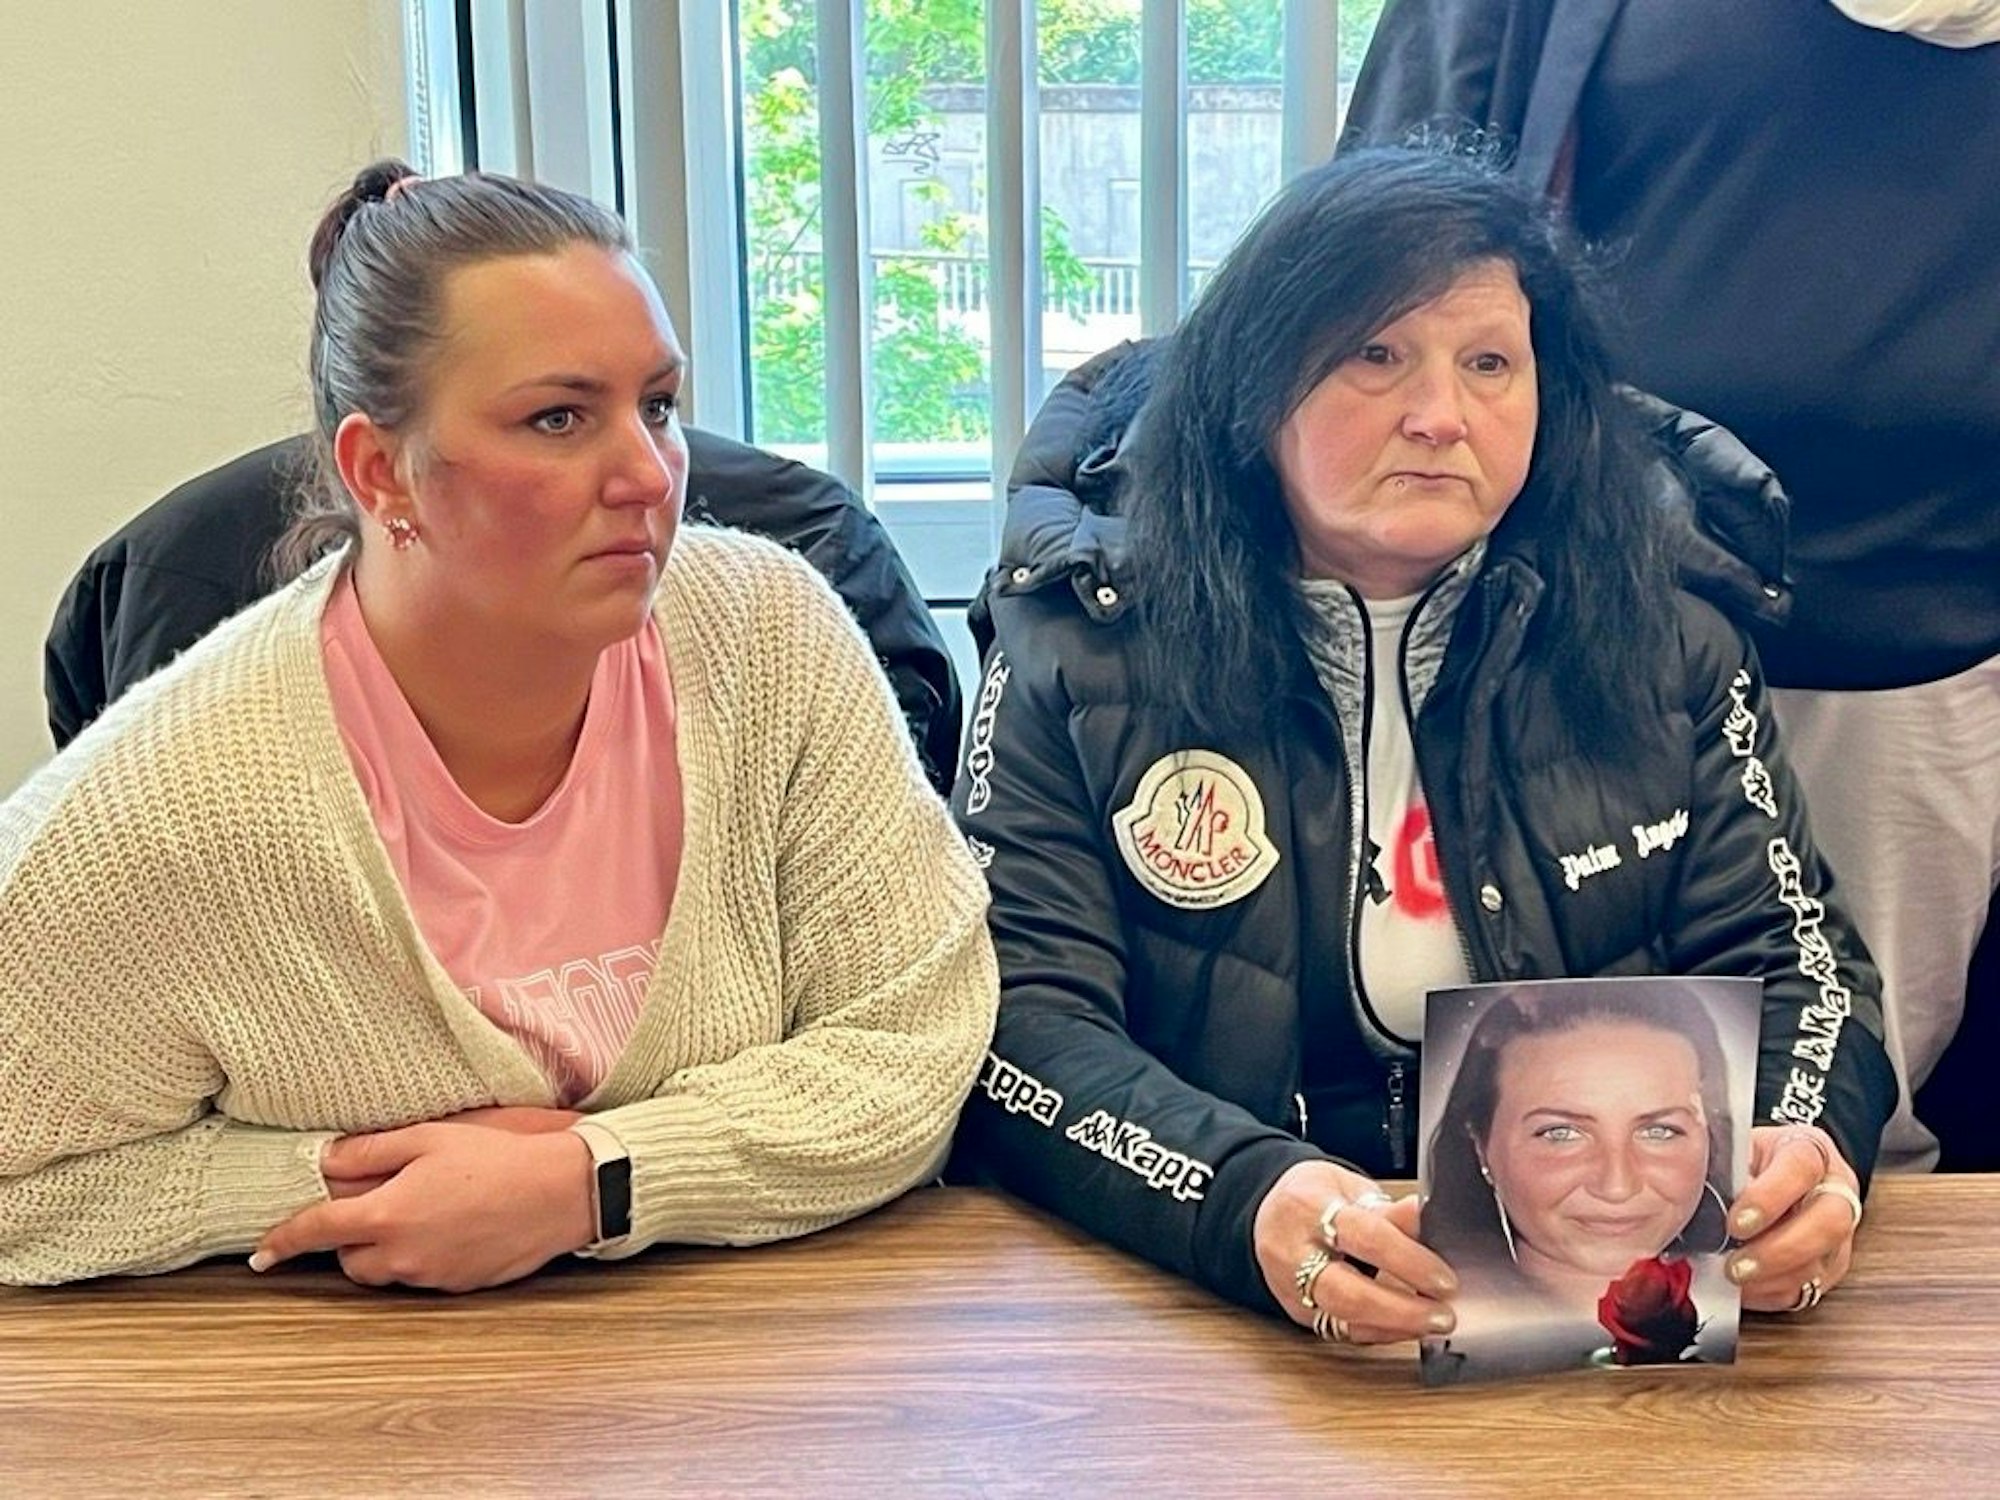 Zwei Frauen sitzen im Gerichtssaal und zeigen ein Bild.